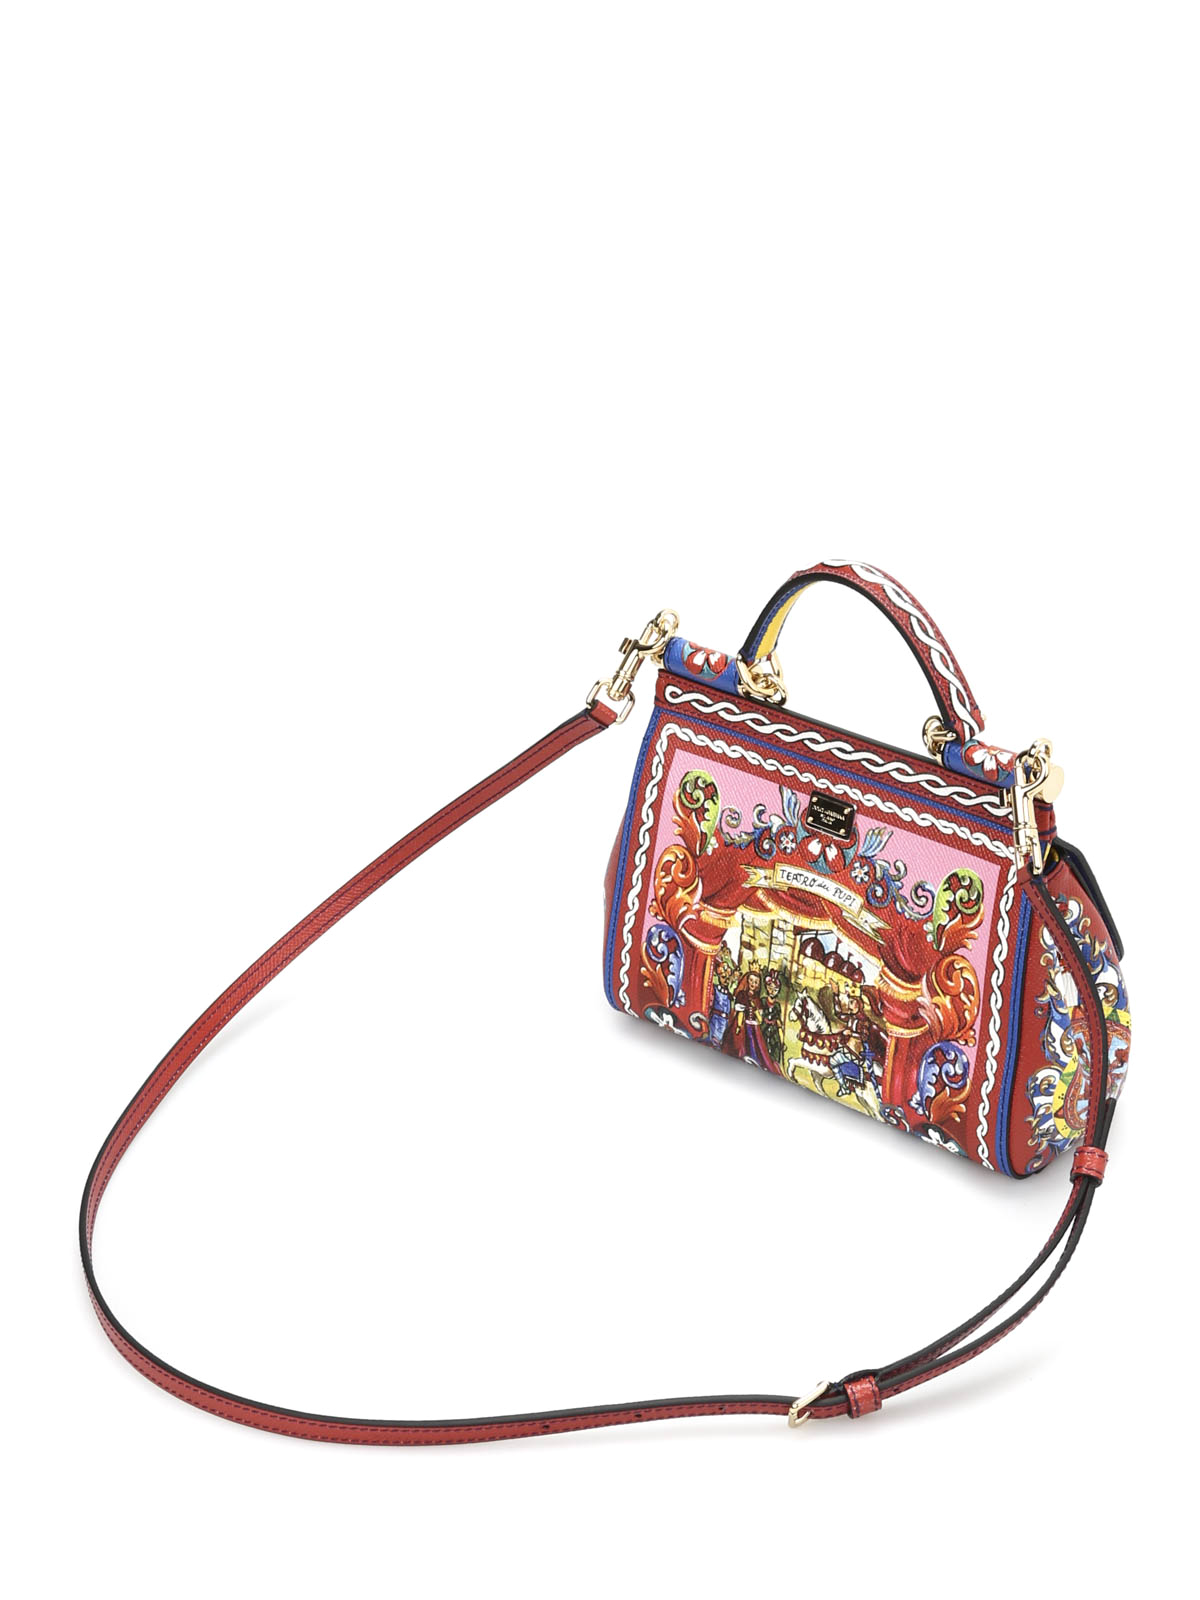 Dolce & Gabbana Sicily Small Shoulder Bag